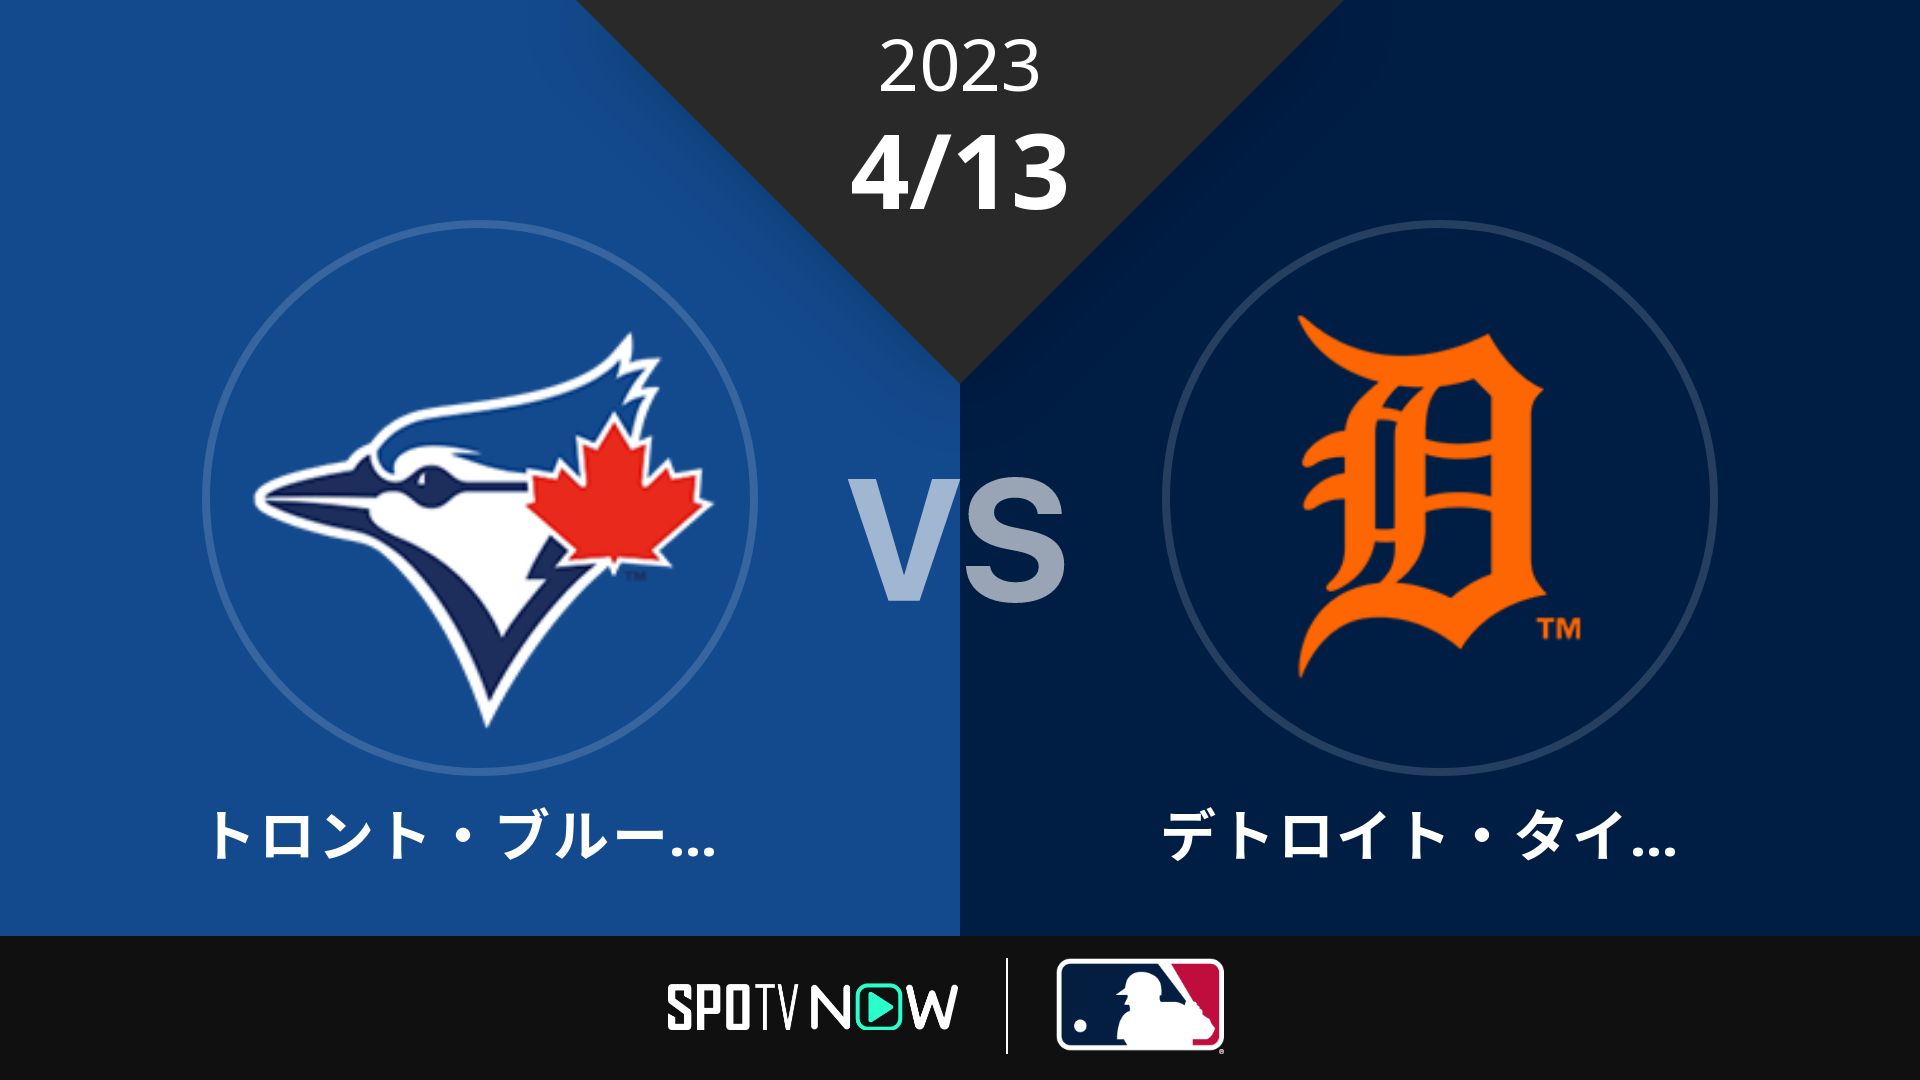 2023/4/13 ブルージェイズ vs タイガース [MLB]